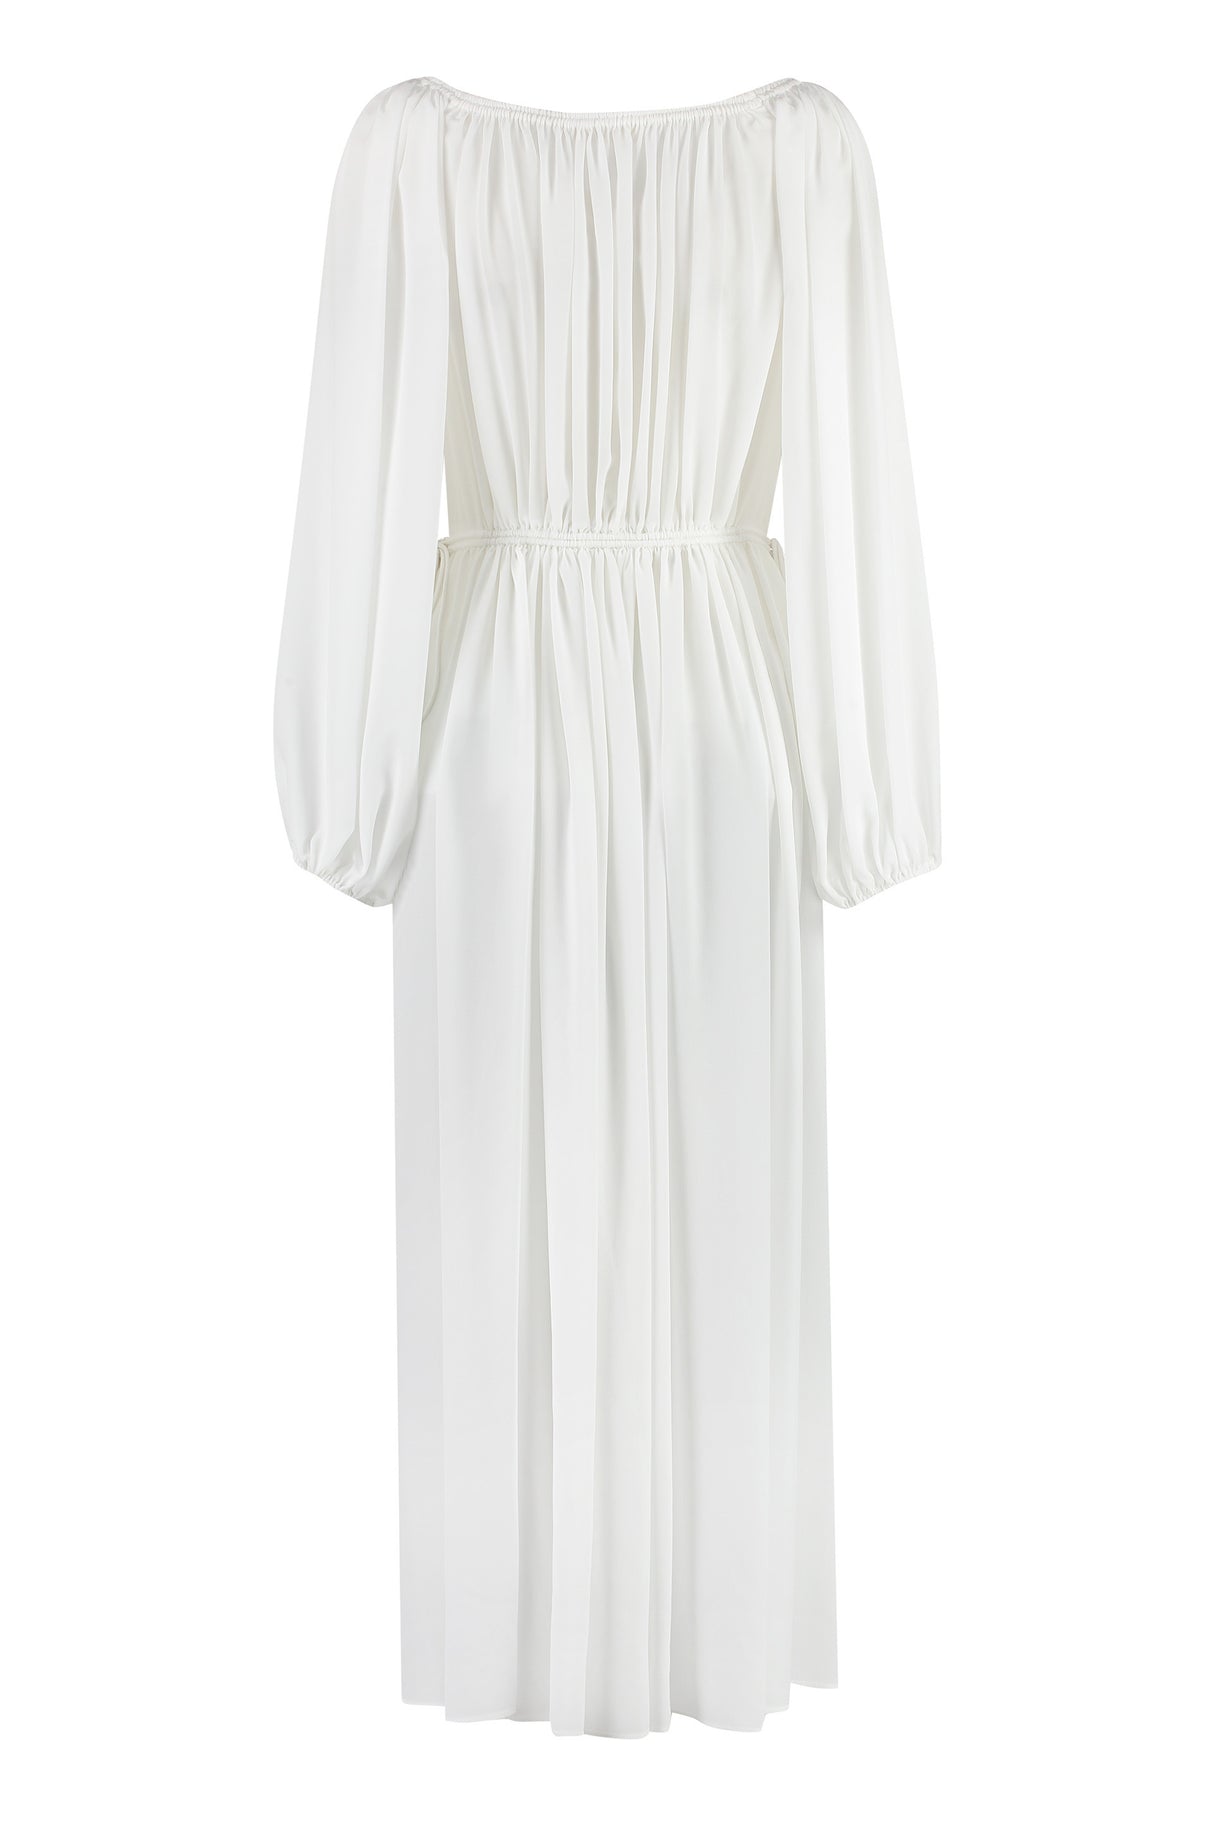 CHLOÉ Elegant White Silk Dress for Women